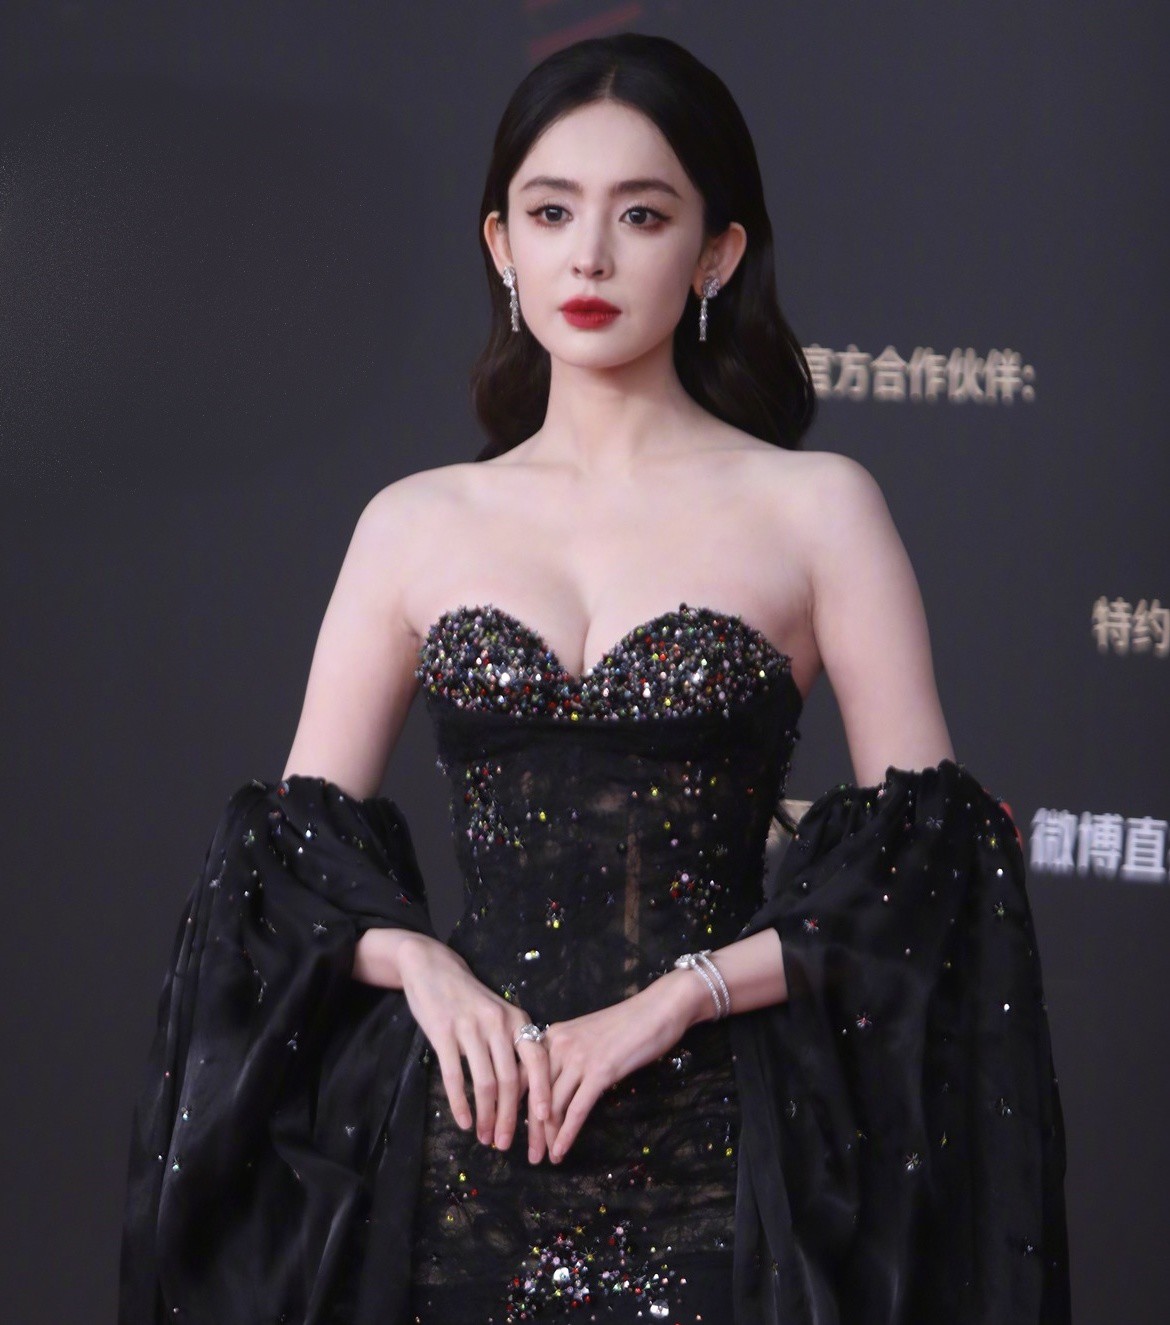 "Tiên nữ" tộc người đẹp nhất Trung Quốc lên top 1 tìm kiếm vì mặc khoe cơ thể - 2